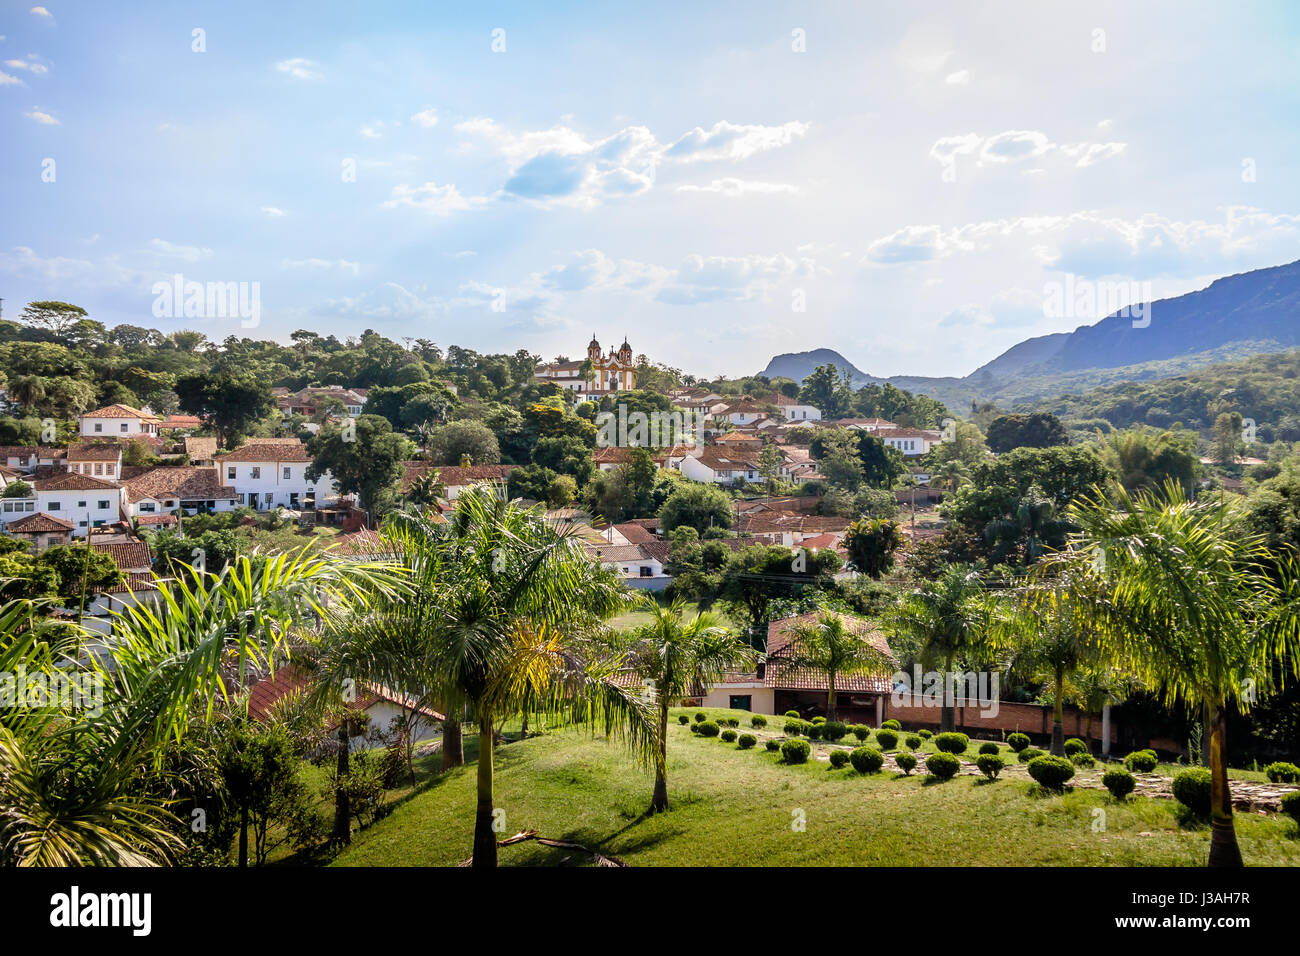 Vue aérienne de la ville de Tiradentes et église de Santo Antonio - Tiradentes, Minas Gerais, Brésil Banque D'Images